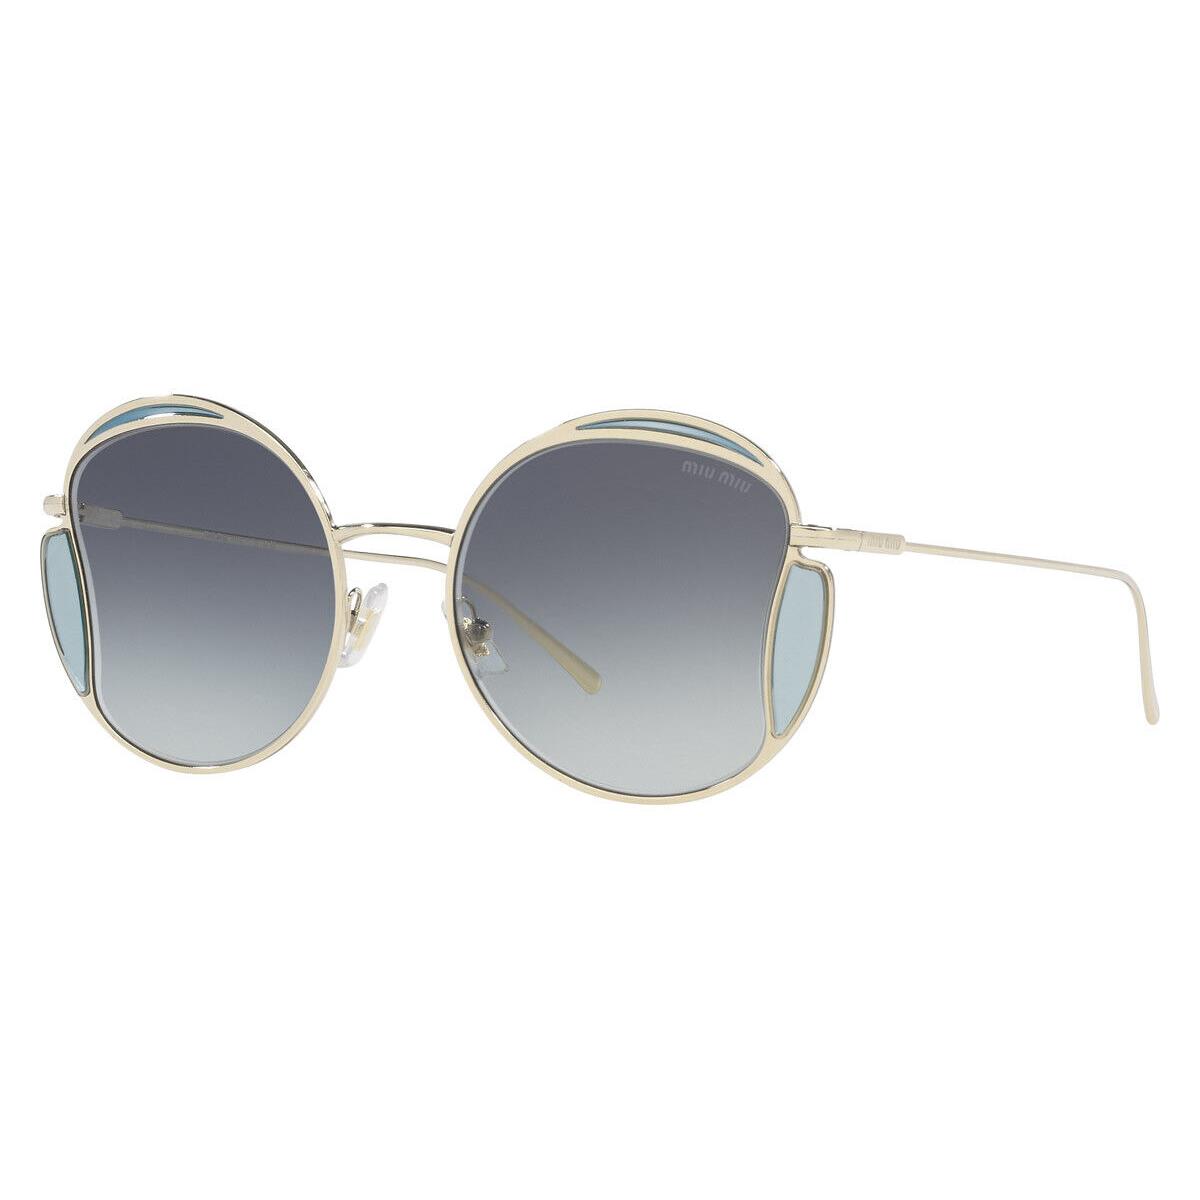 Miu Miu MU 56XS Sunglasses Women Gold Geometric 54mm